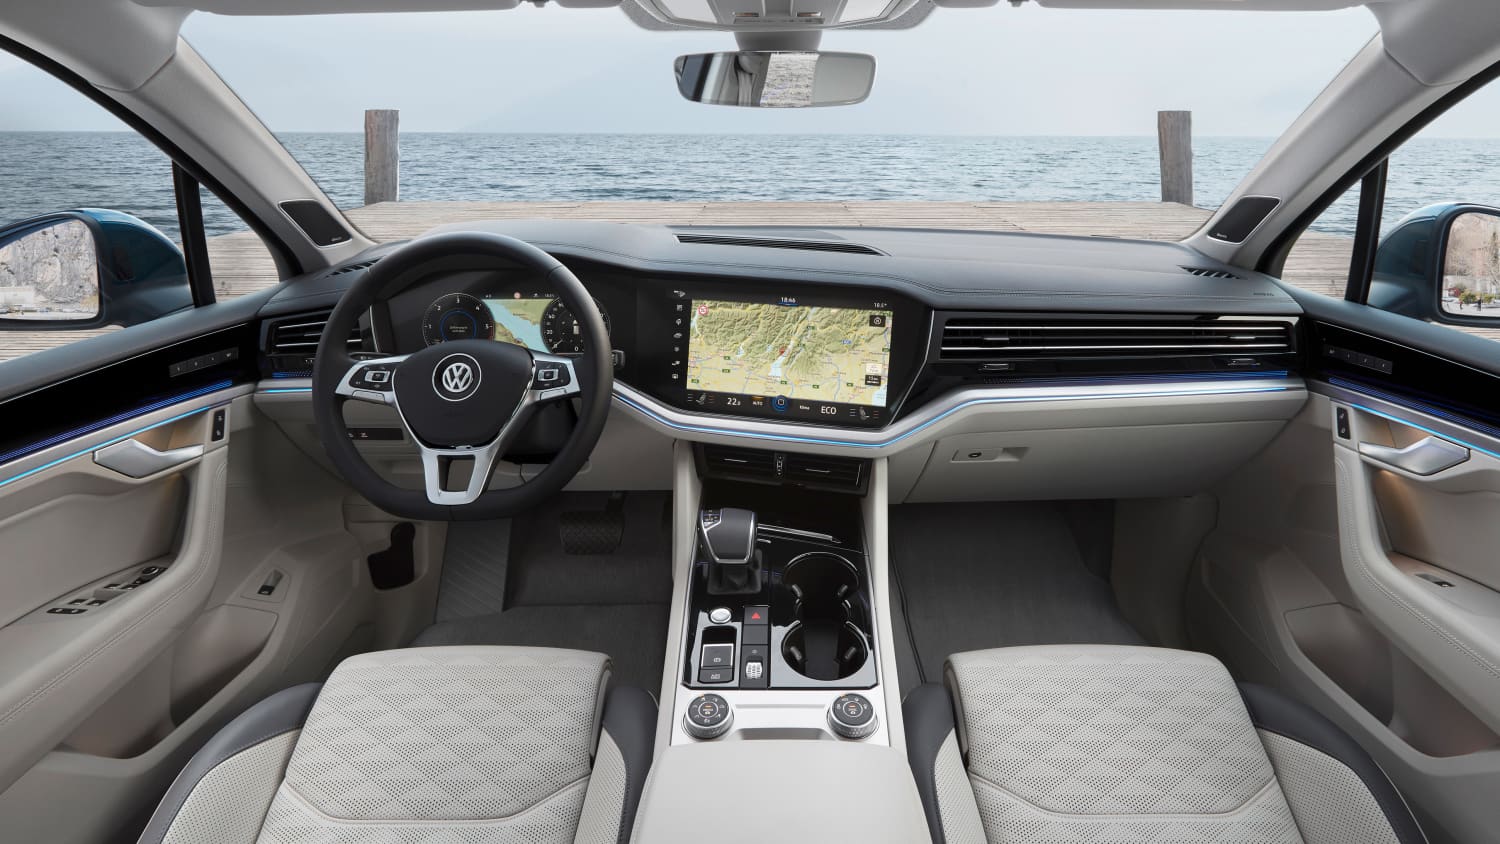 VW Touareg Test: Wie gut ist der Luxus-SUV? Plus: Erste Facelift